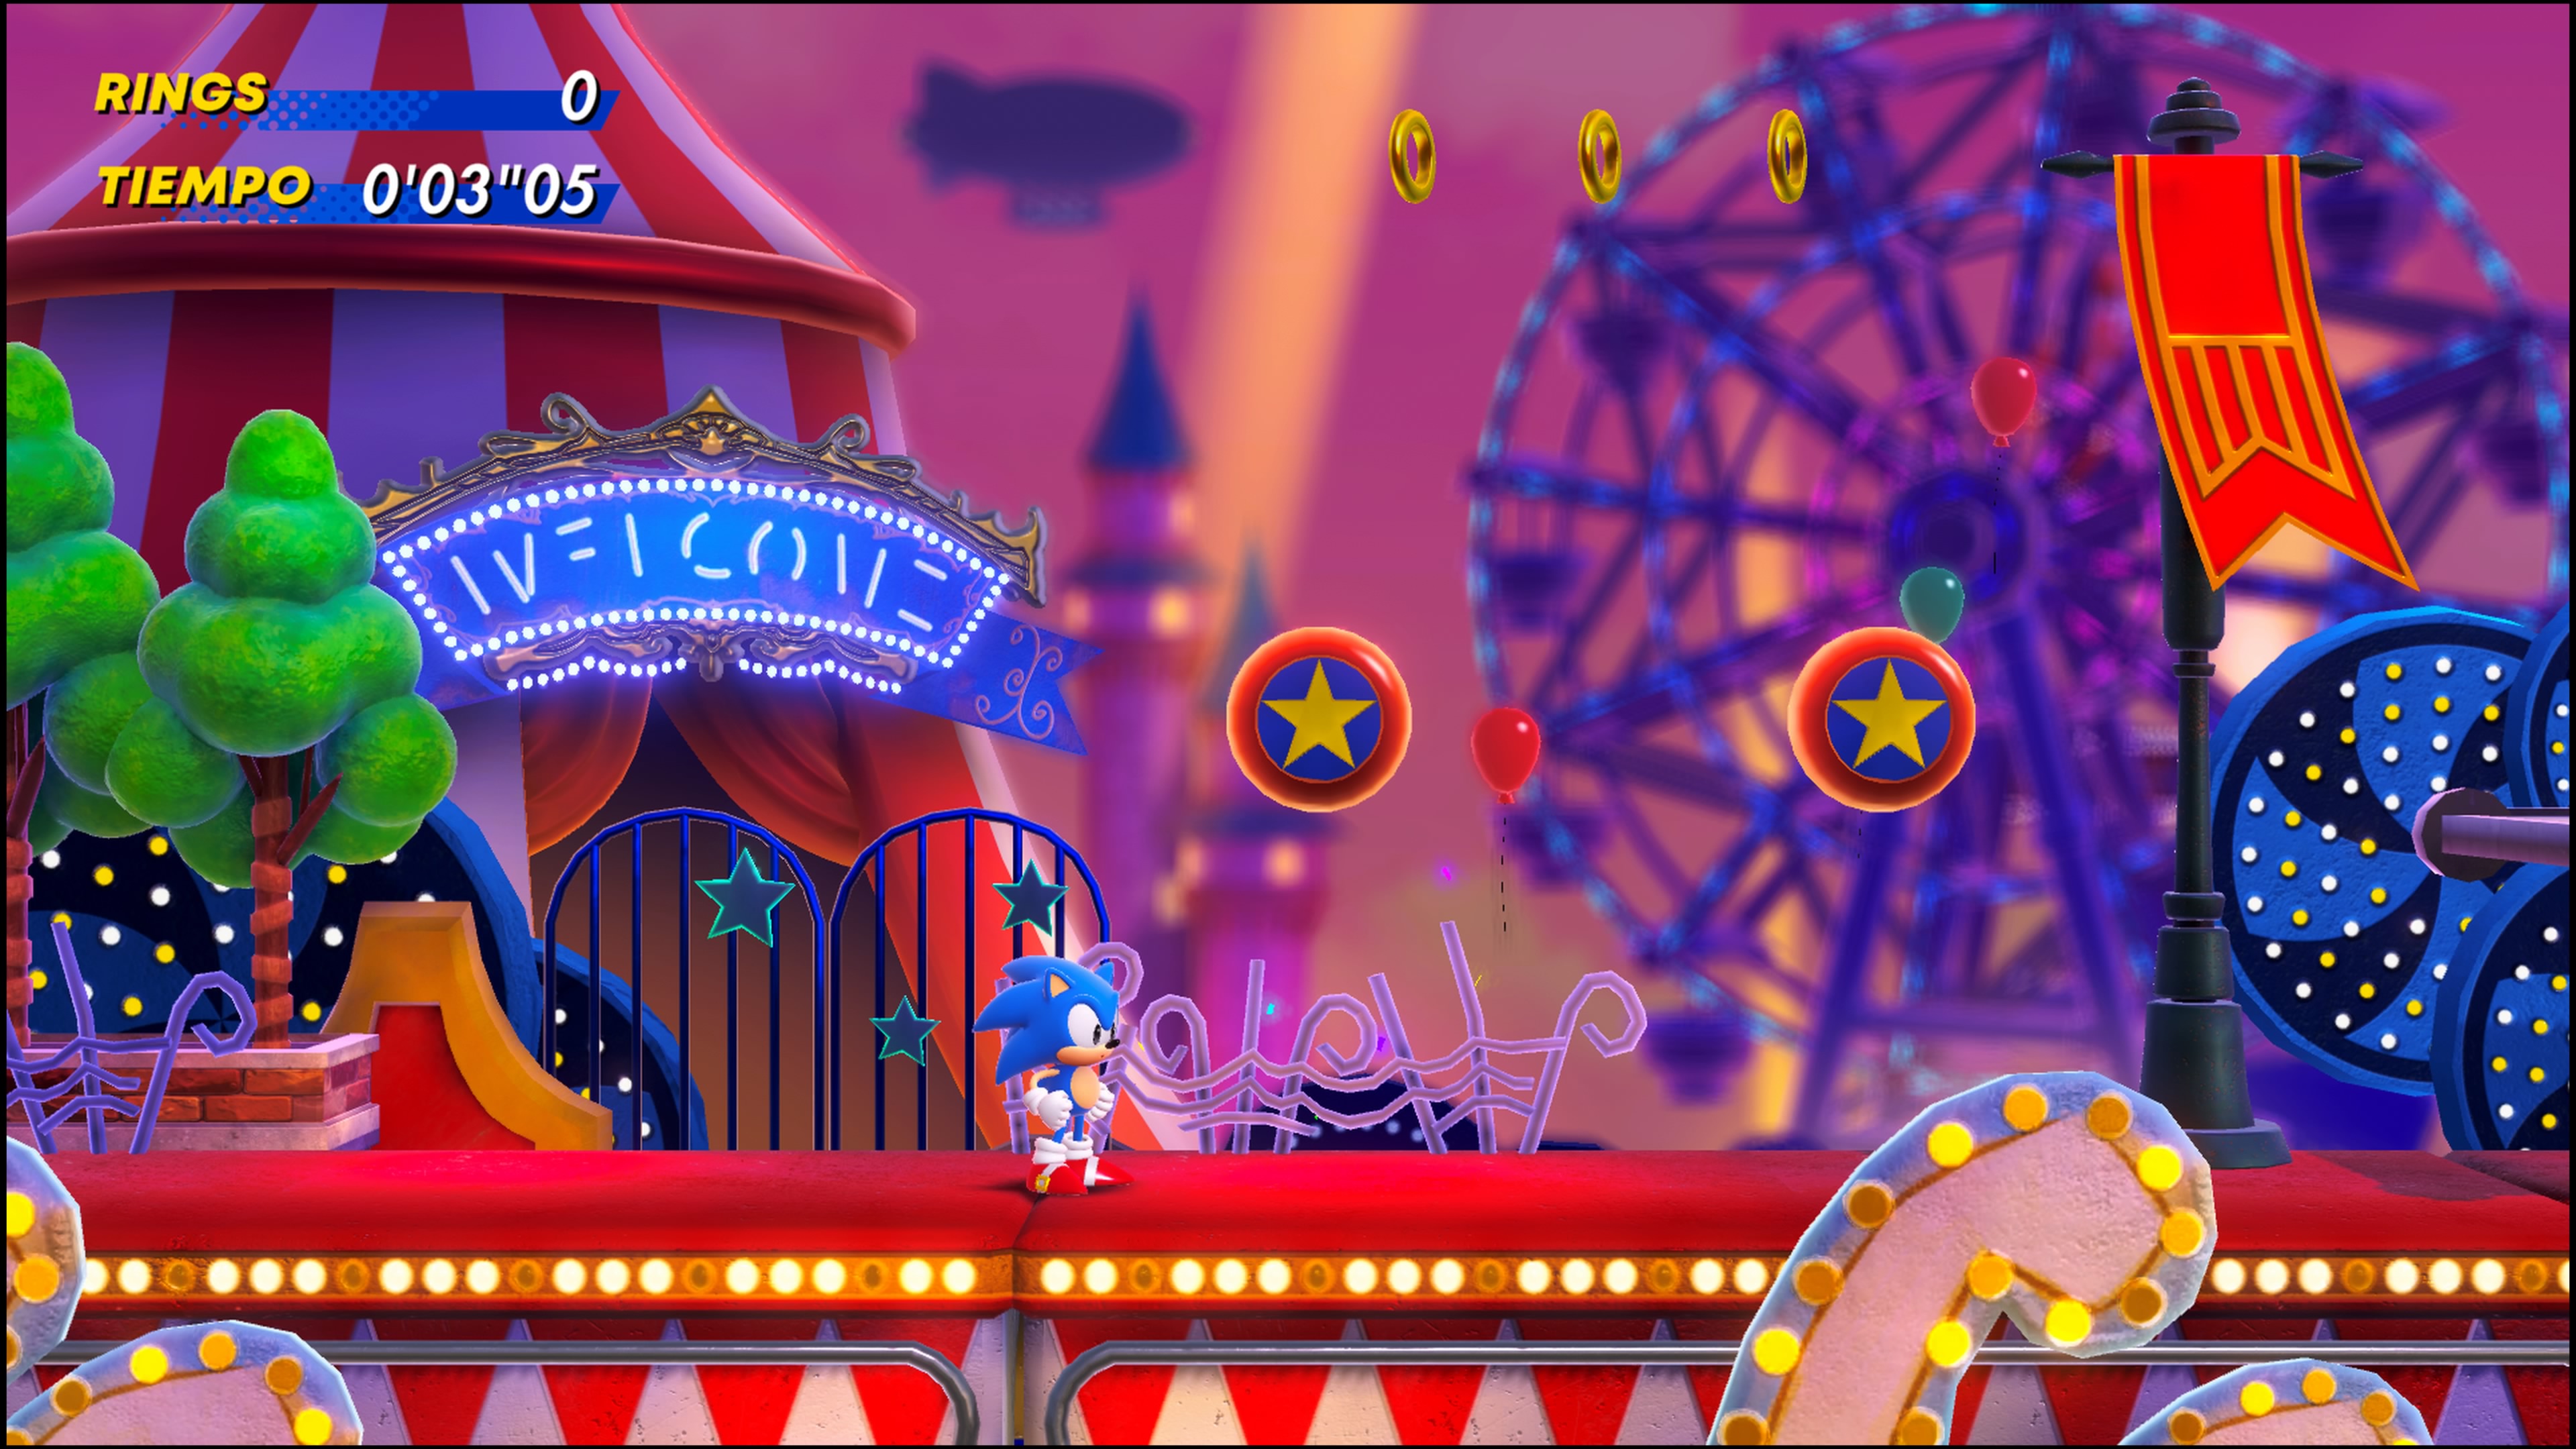 Reseña: Sonic Superstars nos lleva a lo clásico de la franquicia 8